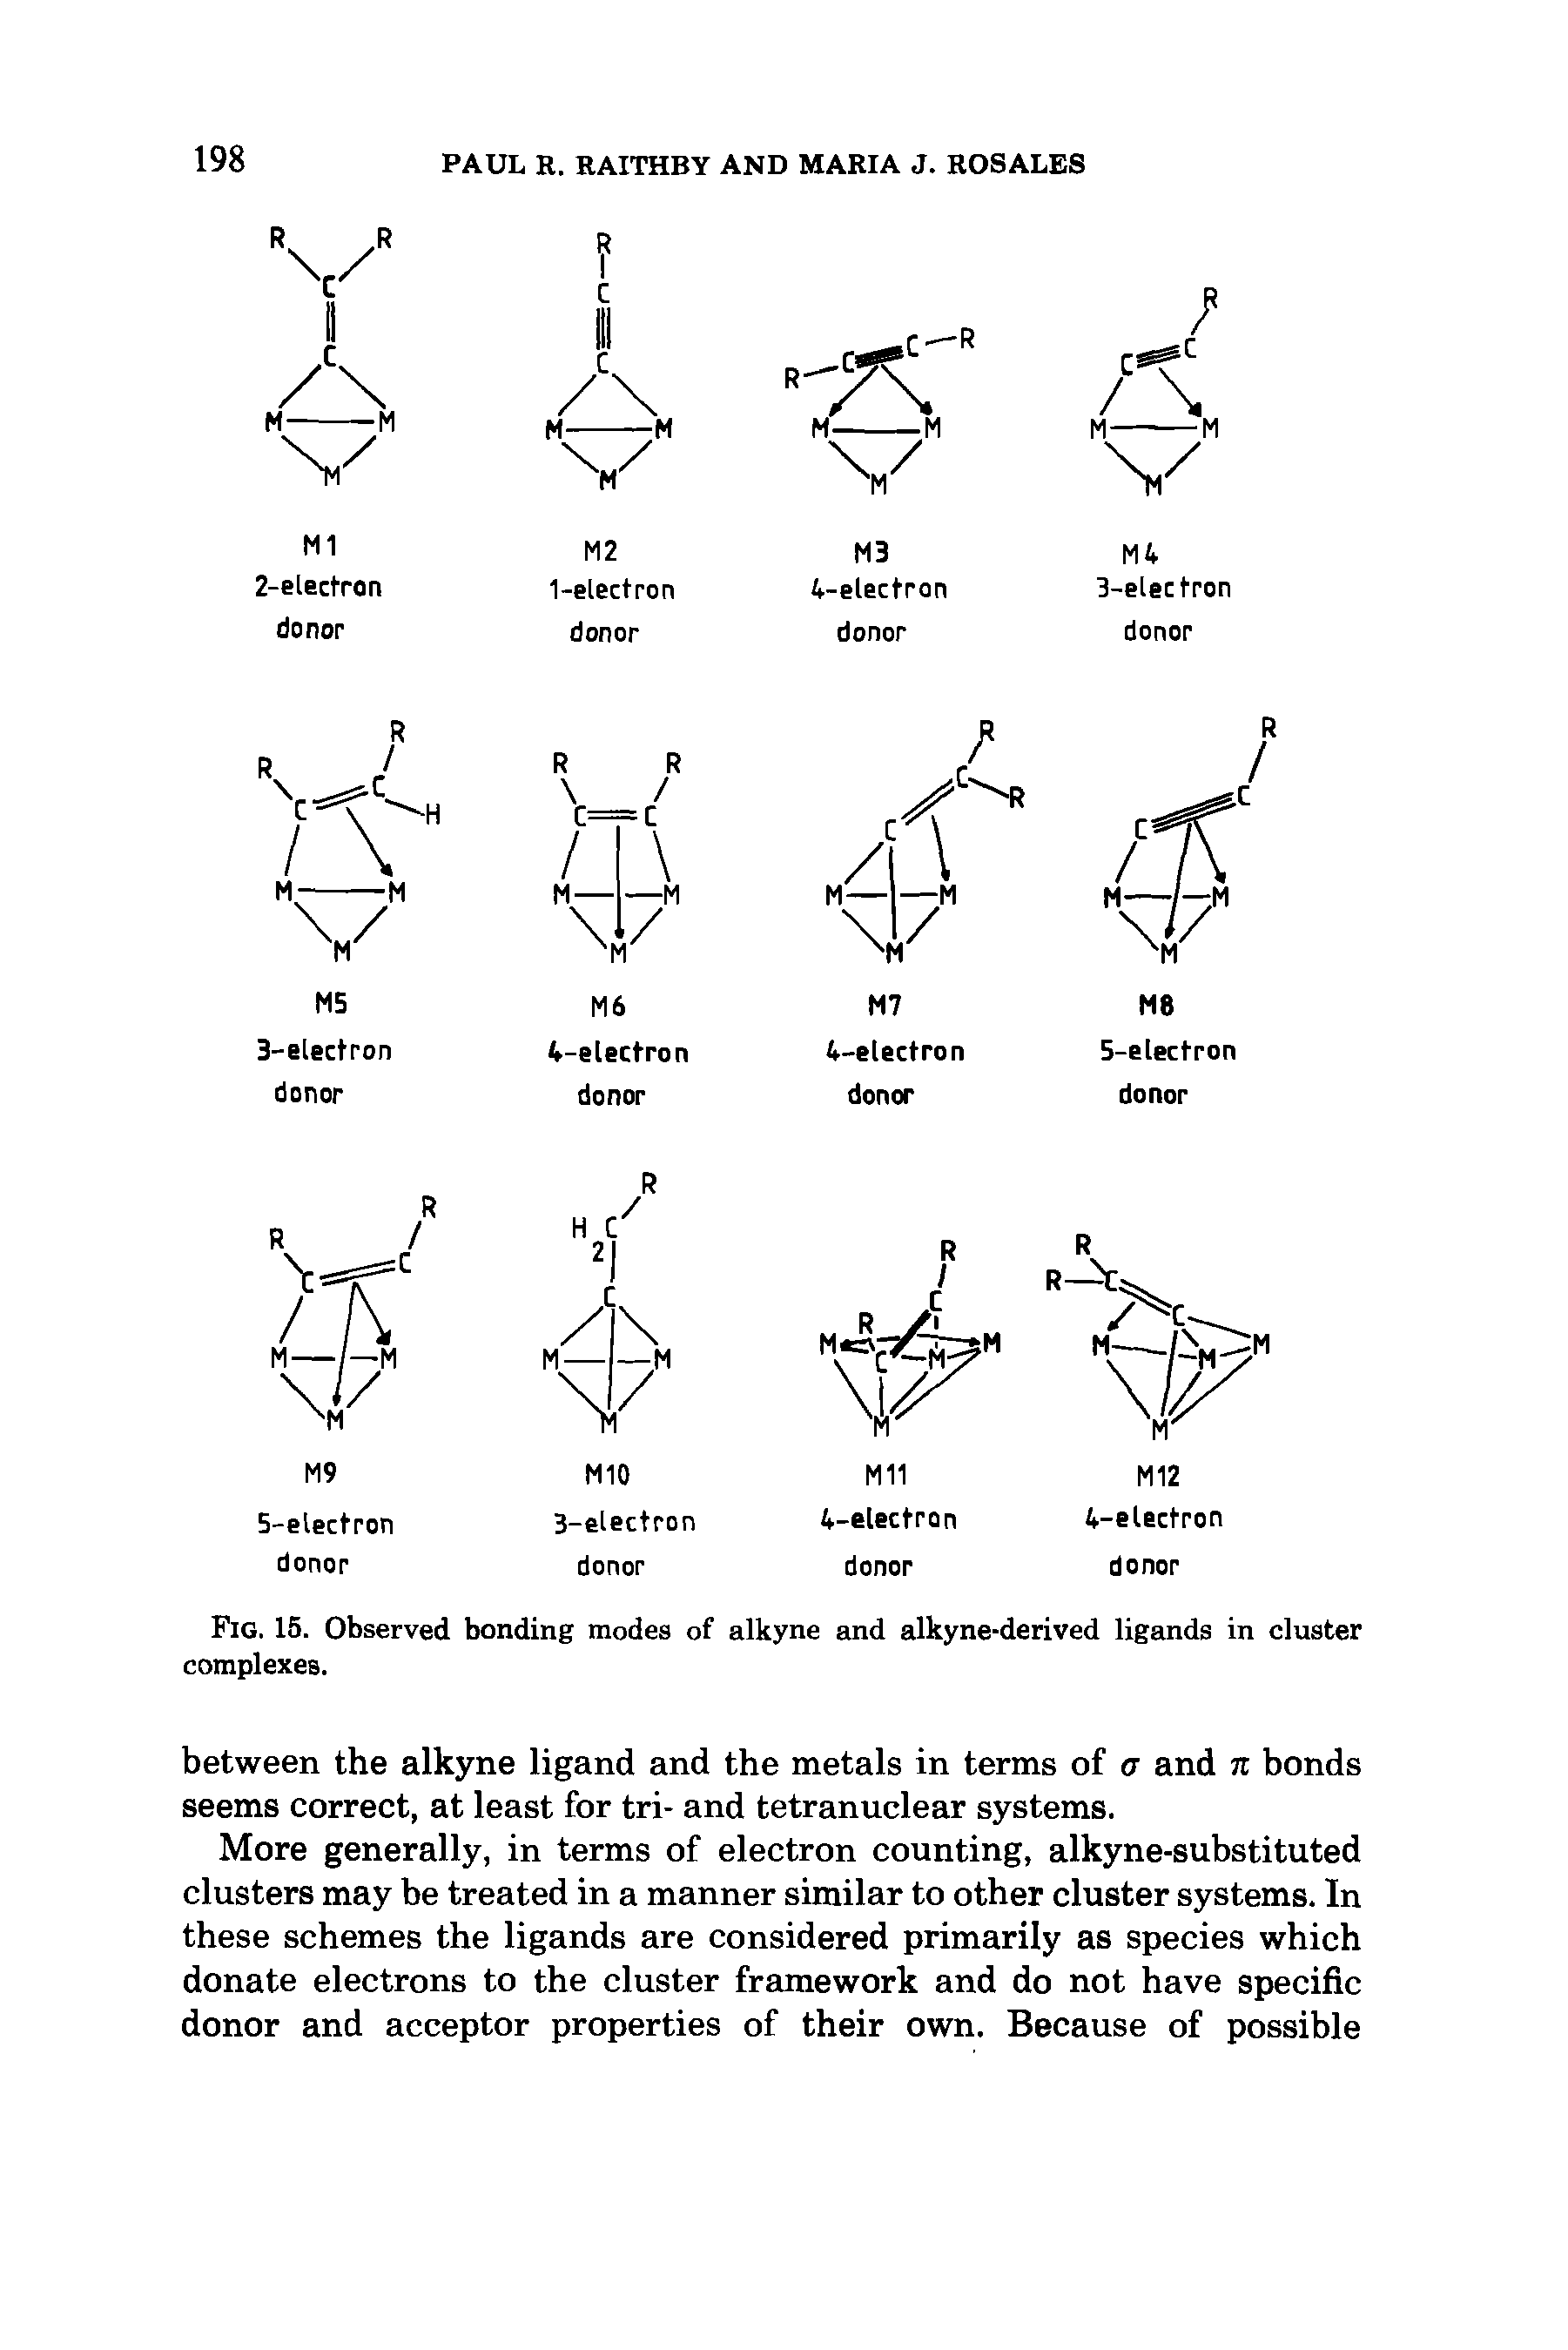 Fig. 15. Observed bonding modes of alkyne and alkyne-derived ligands in cluster complexes.